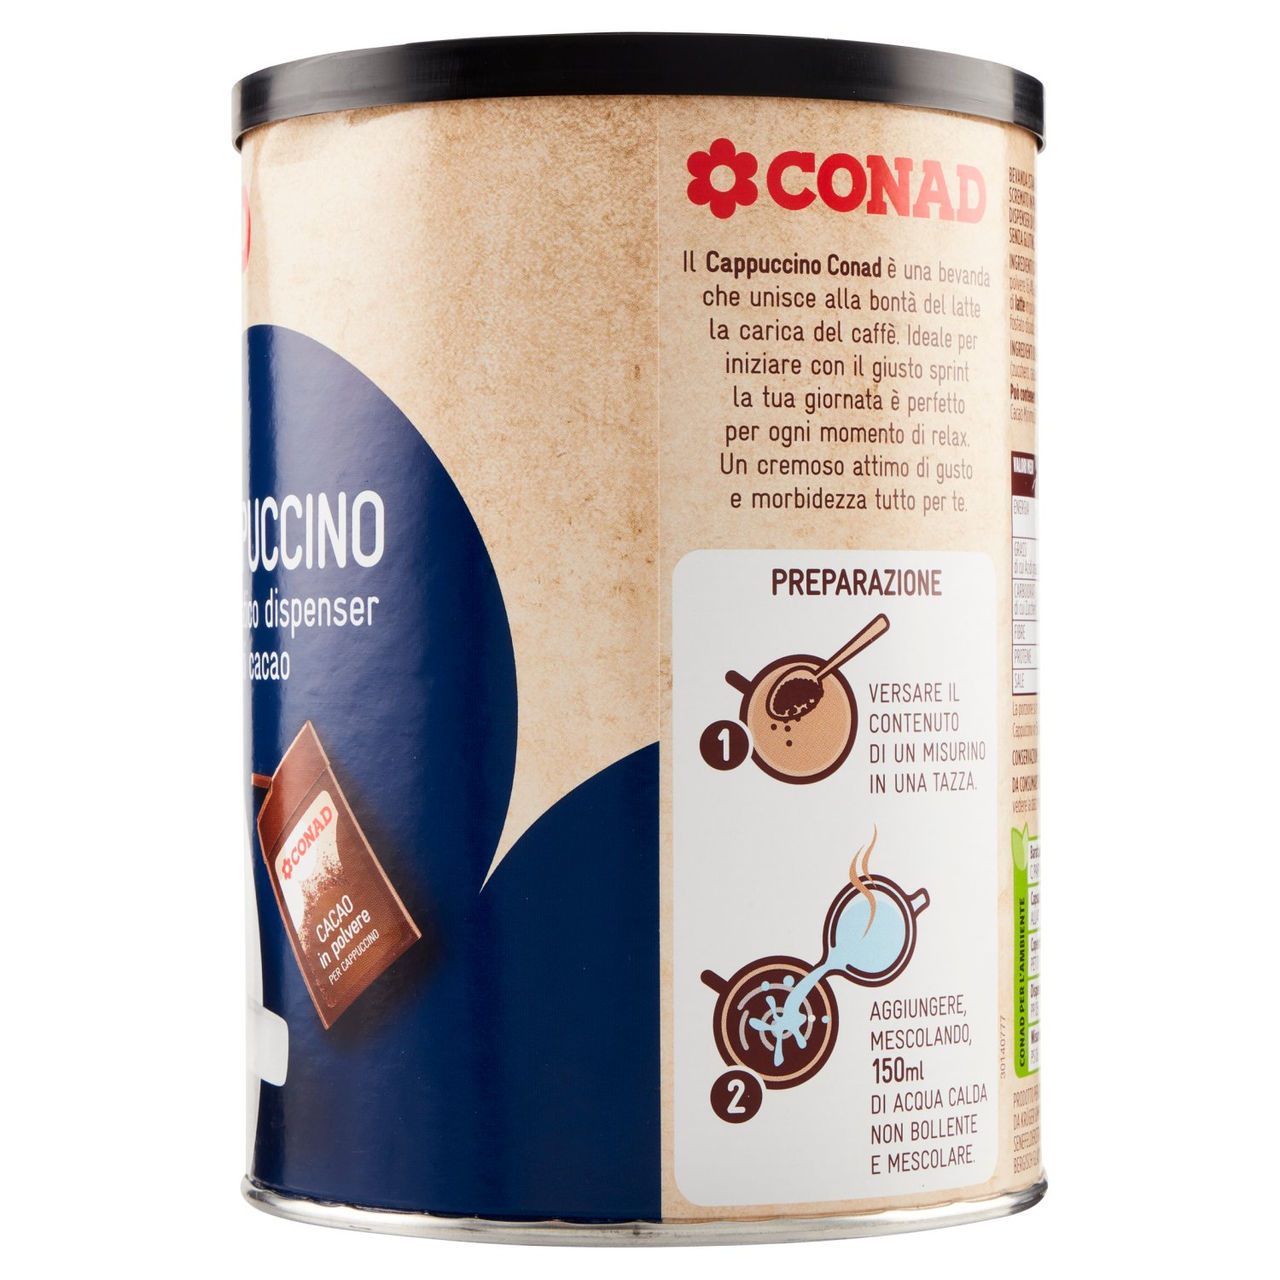 Cappuccino 250 g Conad in vendita online